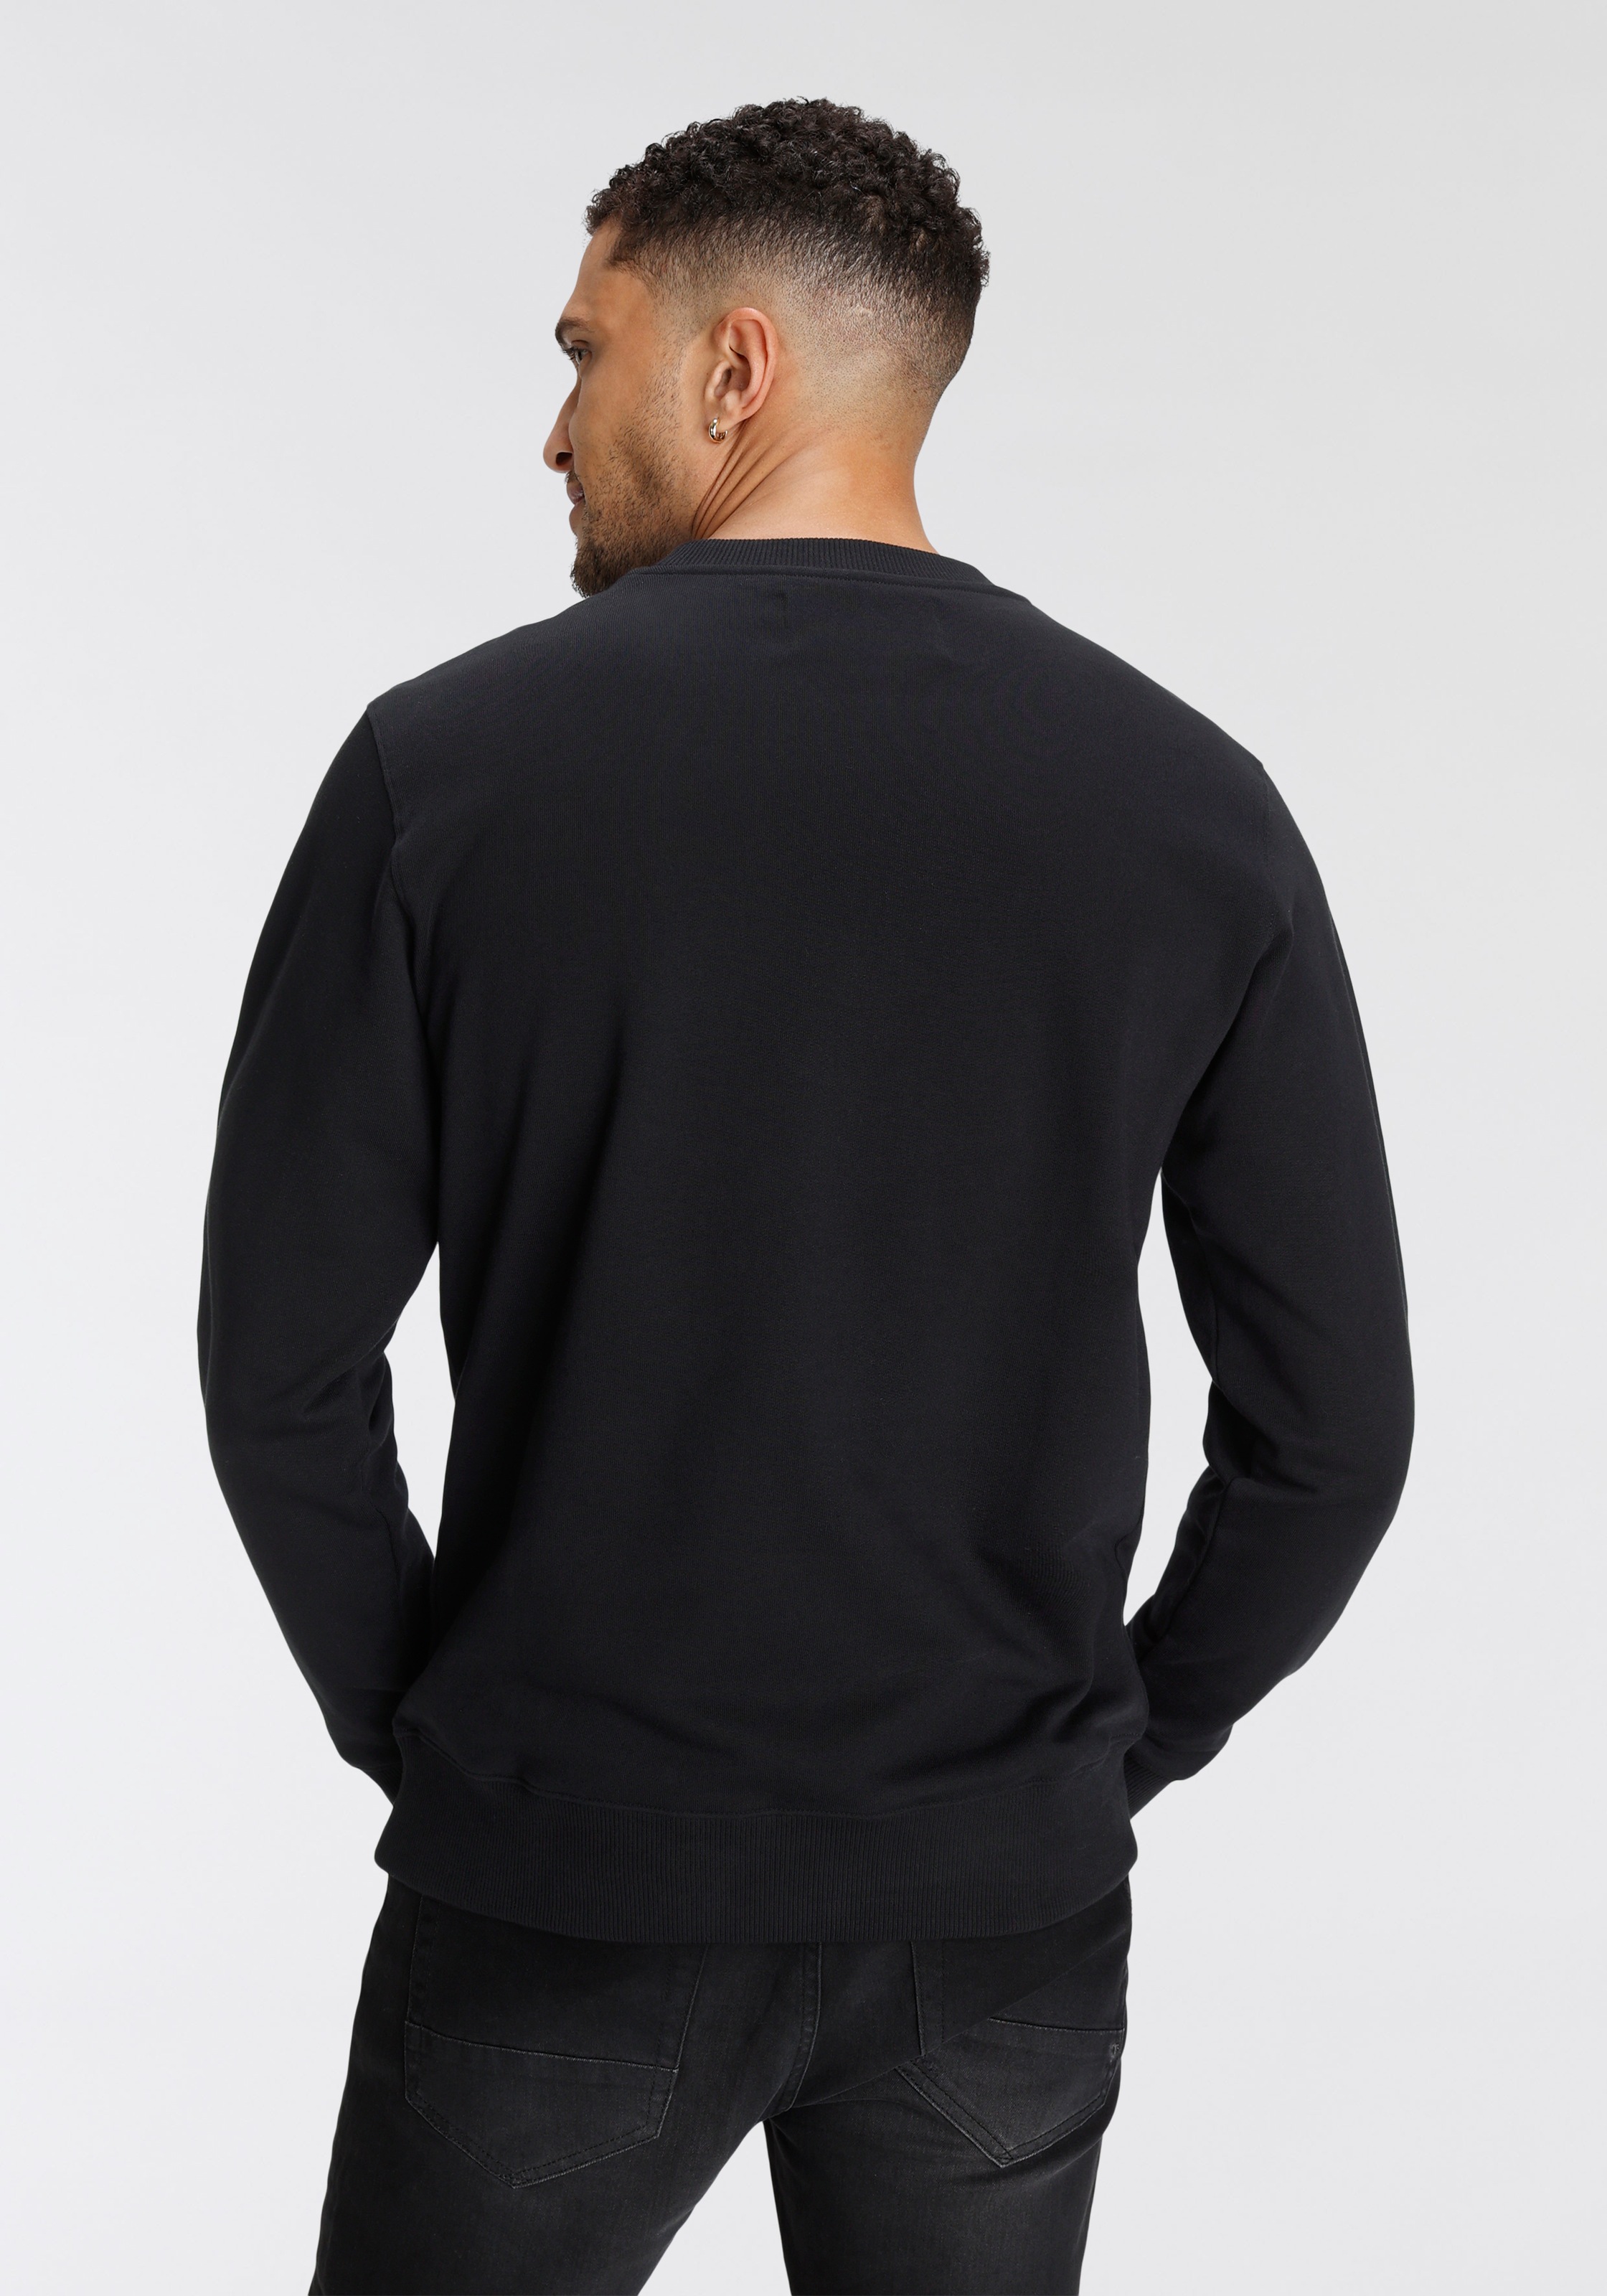 Calvin Klein Jeans Sweatshirt »CORE INSTIT LOGO SWEATSHIRT« bei OTTO